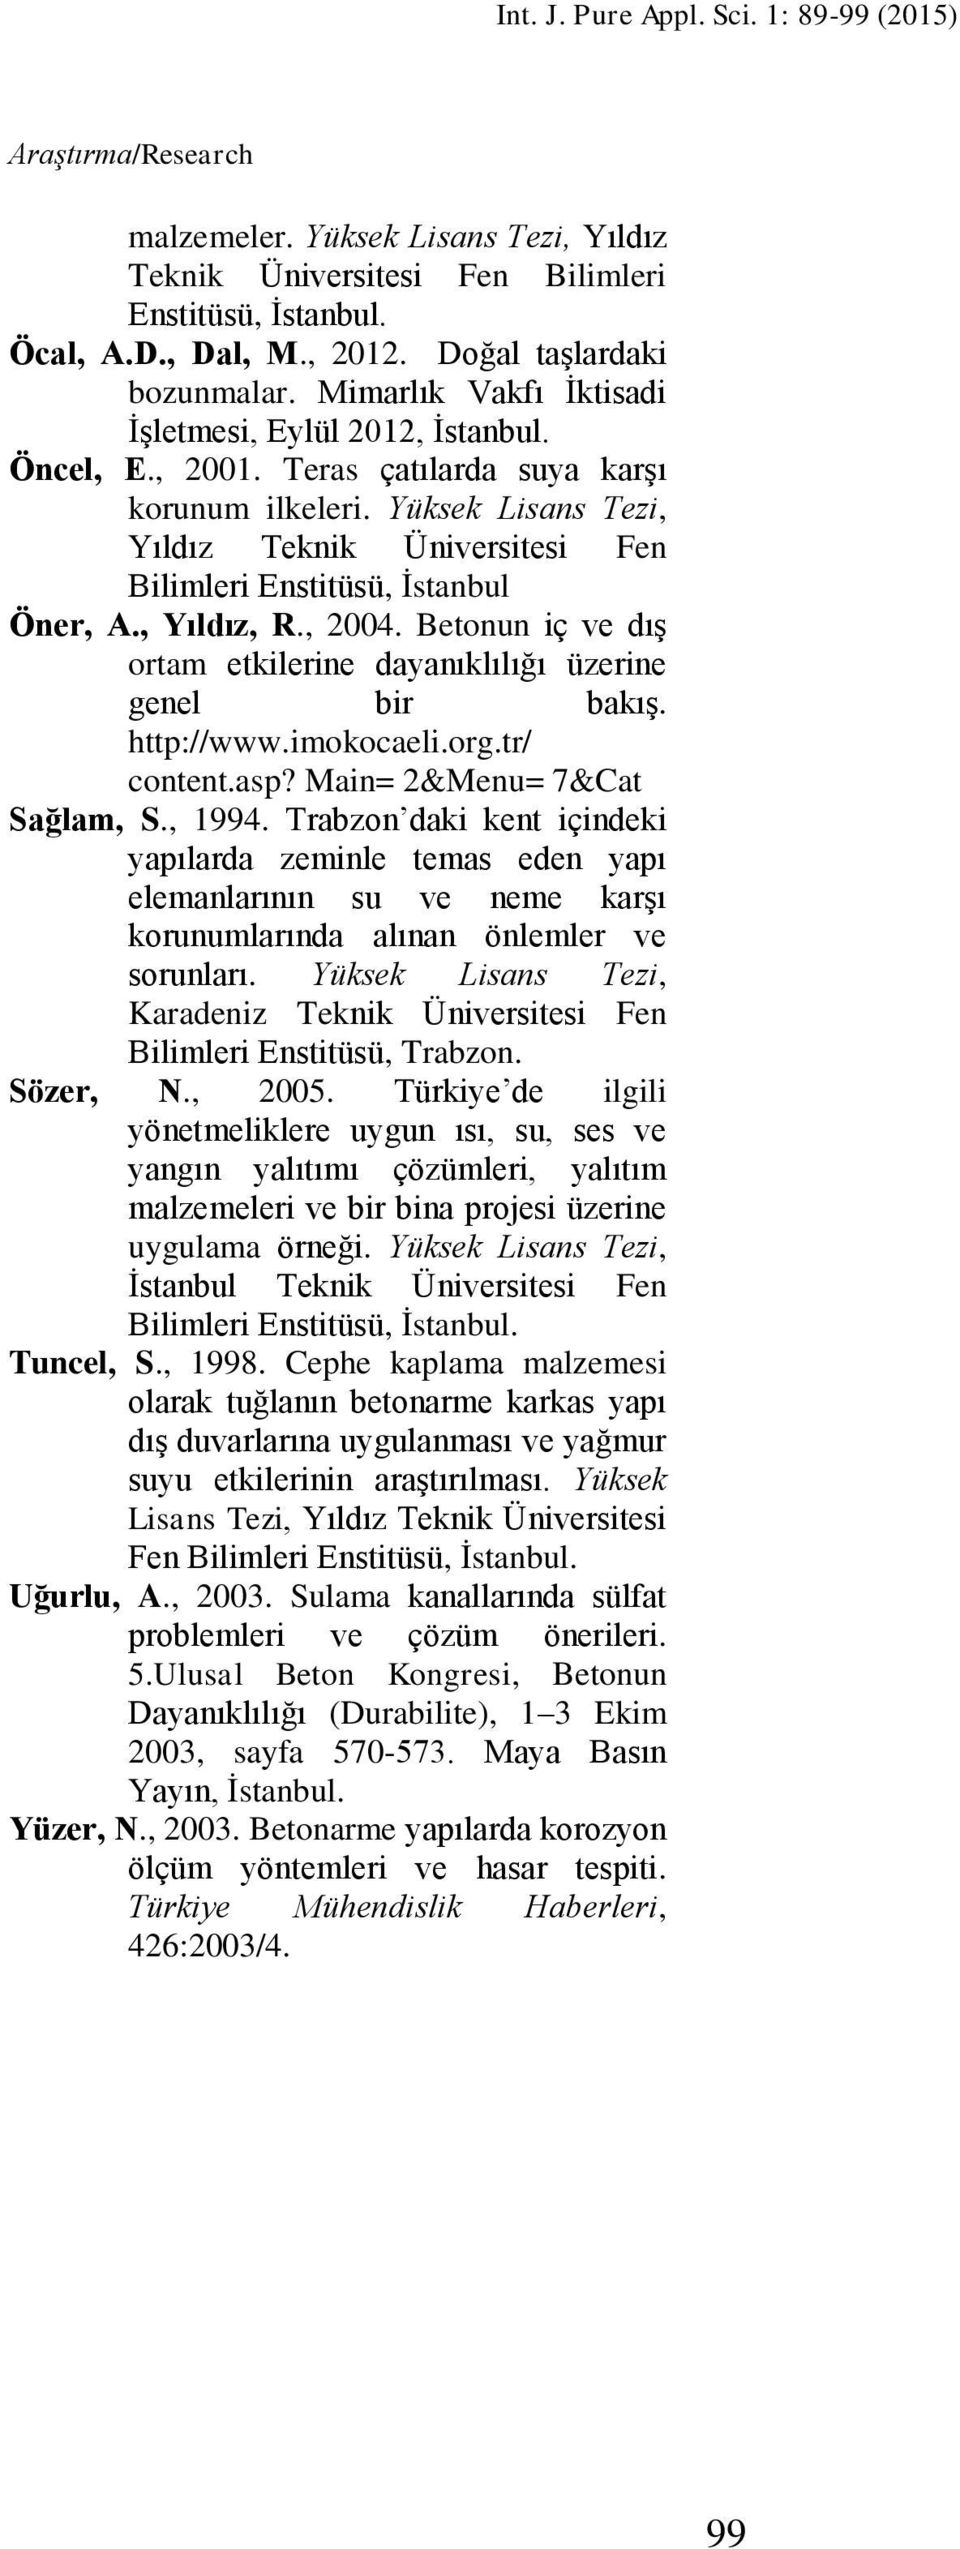 Yüksek Lisans Tezi, Yıldız Teknik Üniversitesi Fen Bilimleri Enstitüsü, İstanbul Öner, A., Yıldız, R., 2004. Betonun iç ve dış ortam etkilerine dayanıklılığı üzerine genel bir bakış. http://www.